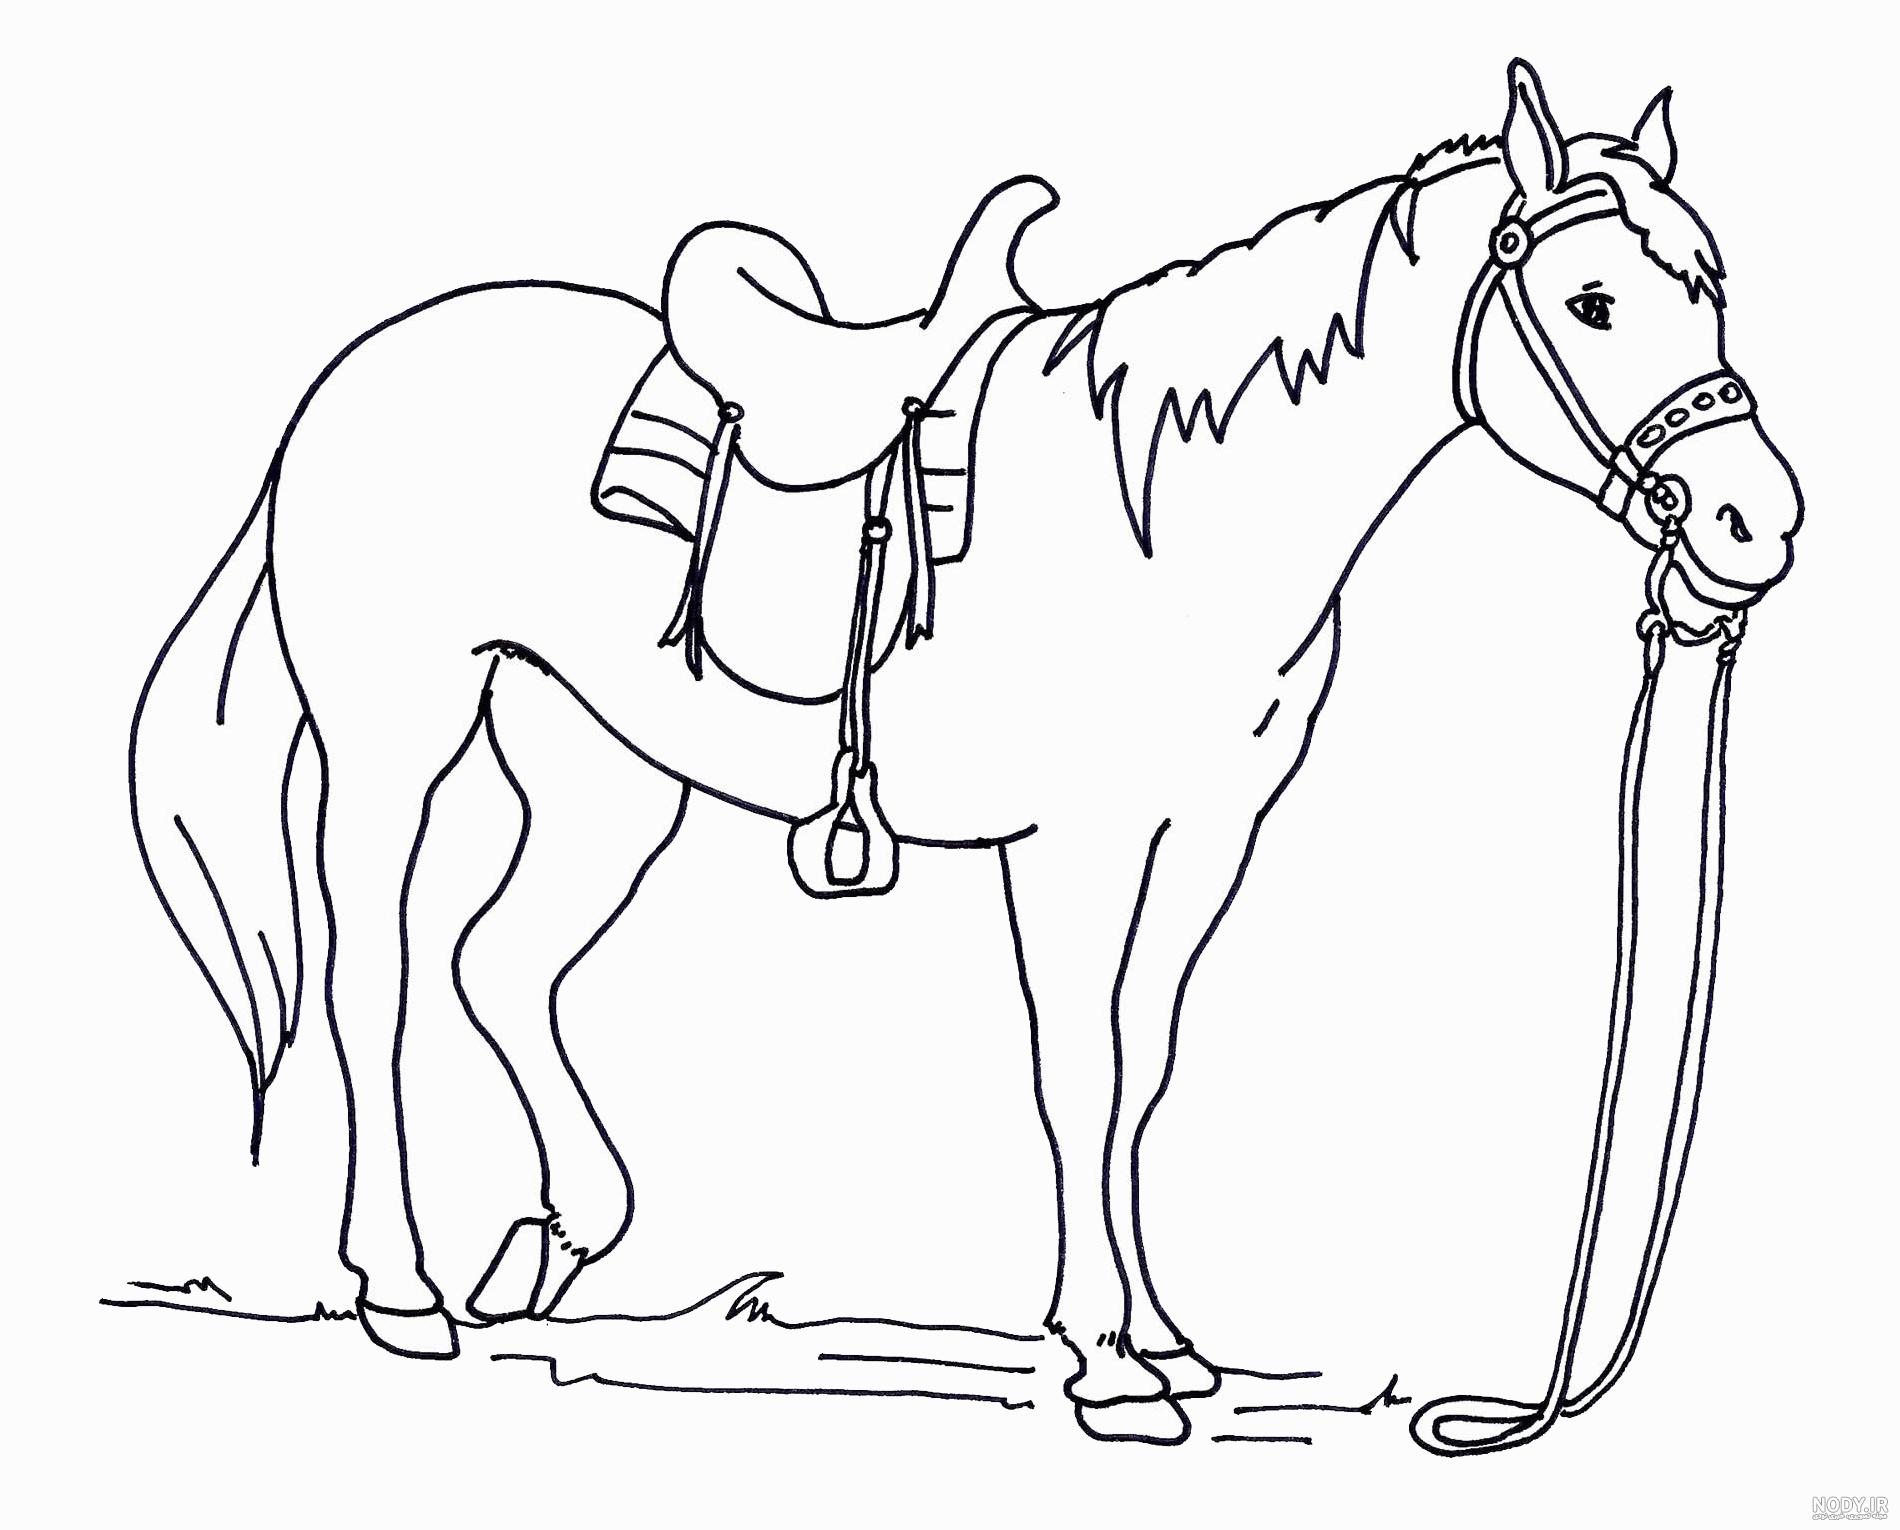 عکس نقاشی ساده از اسب